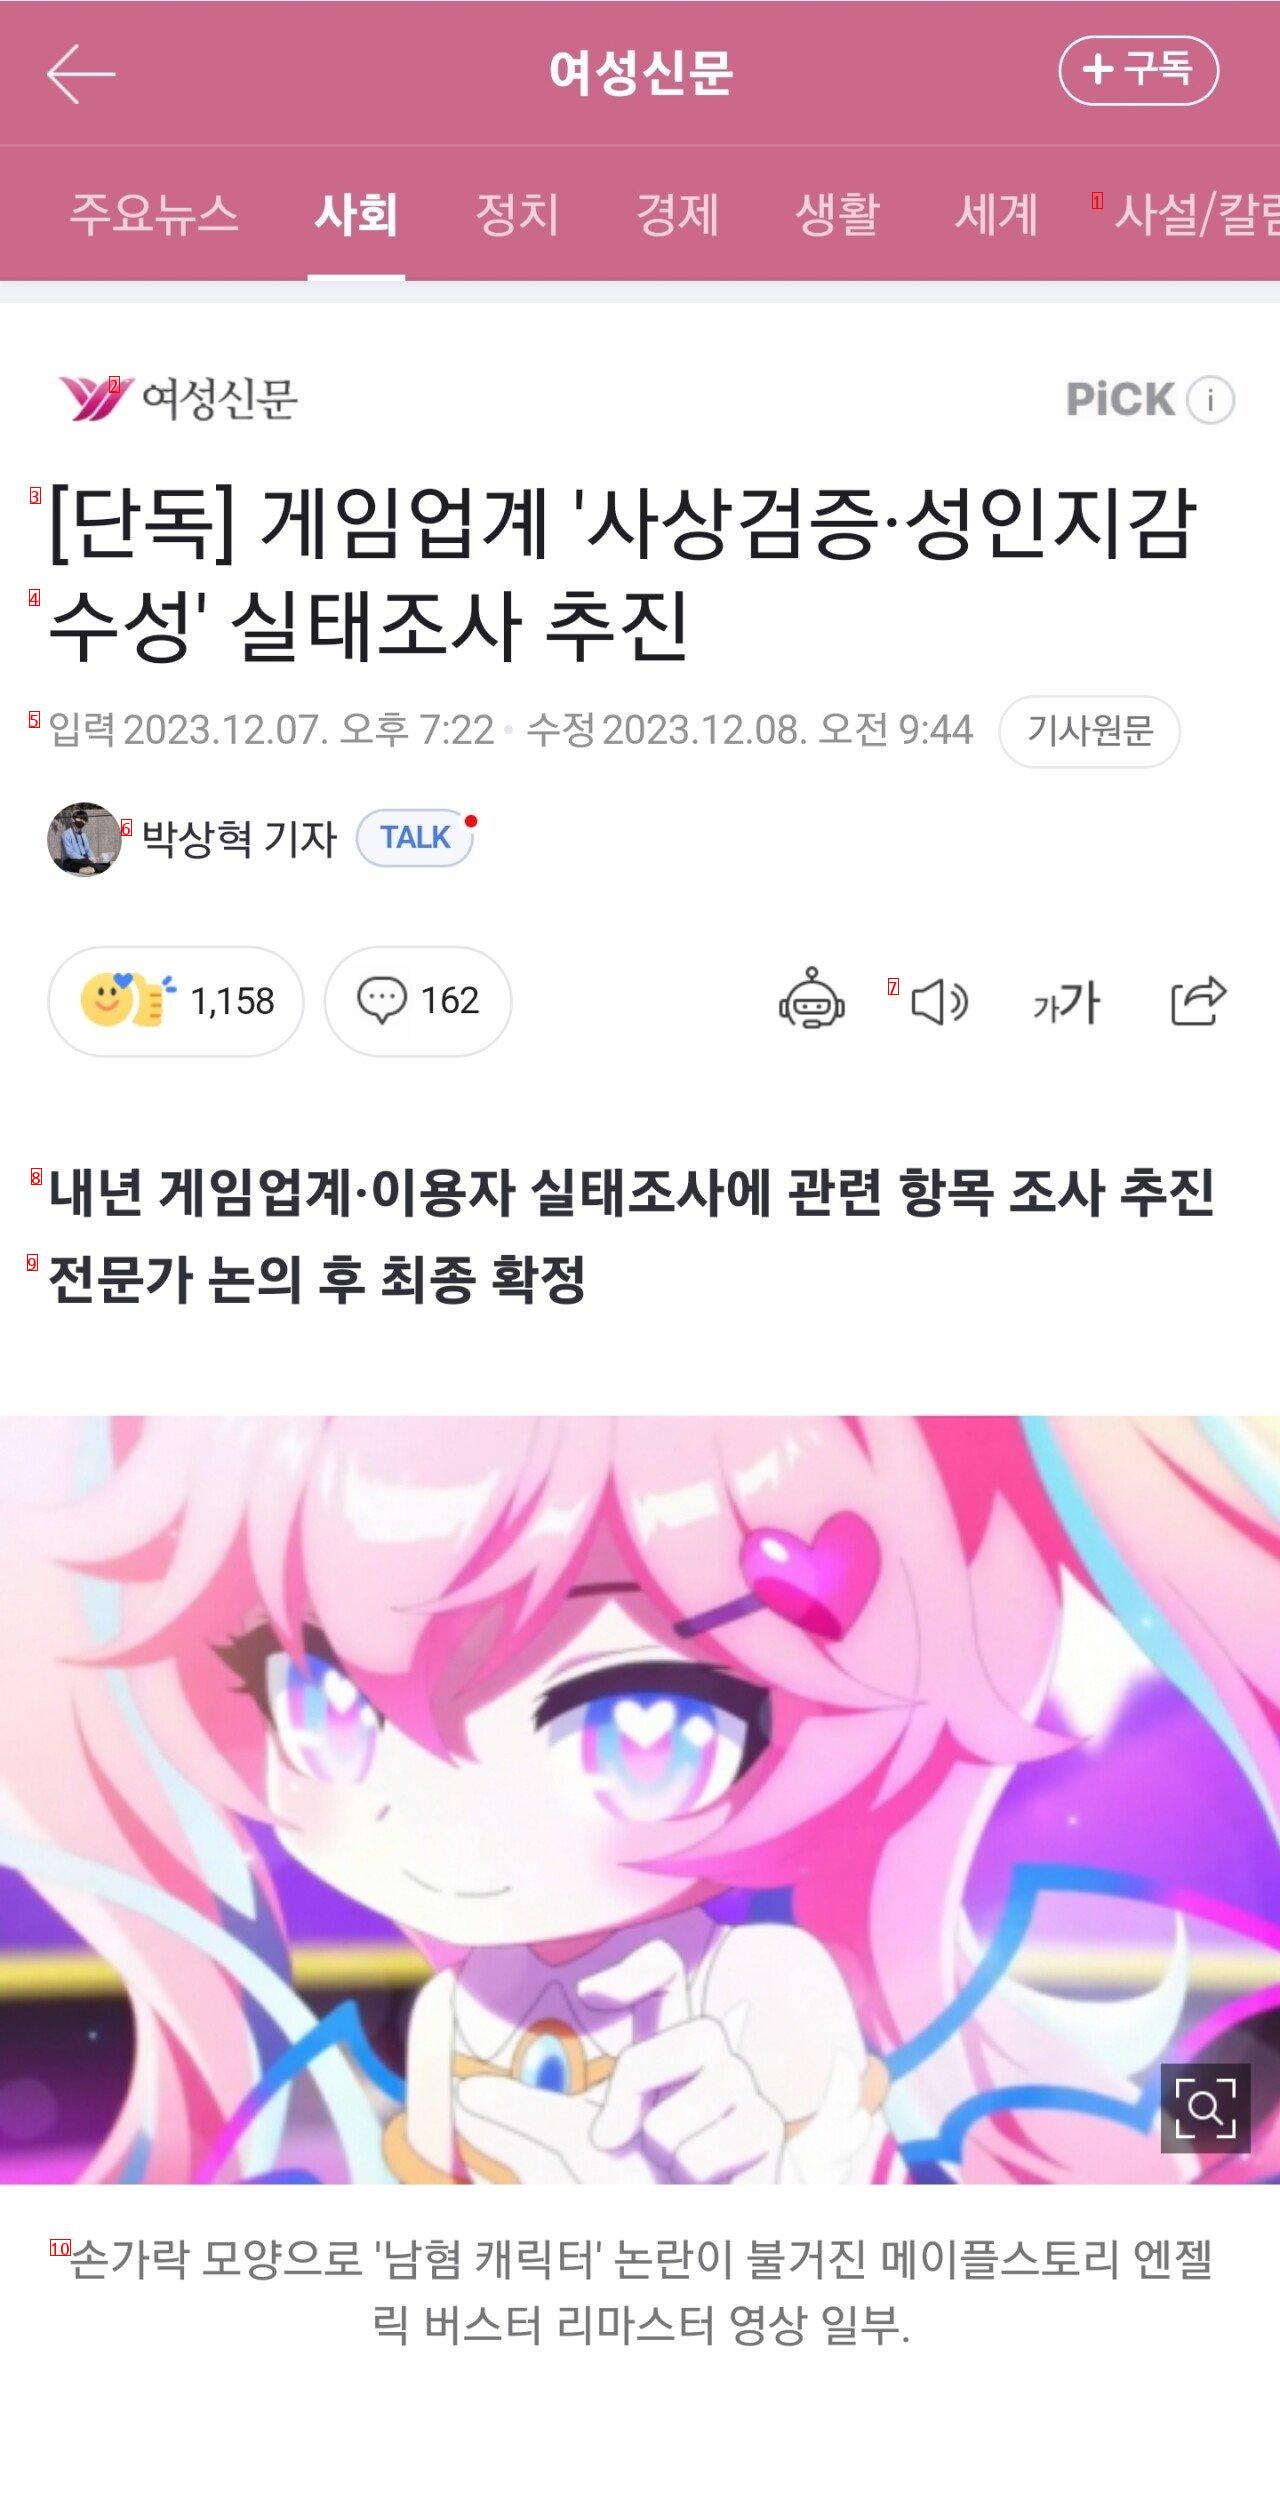 [단독] 게임업계 ''사상검증·성인지감수성'' 실태조사 추진